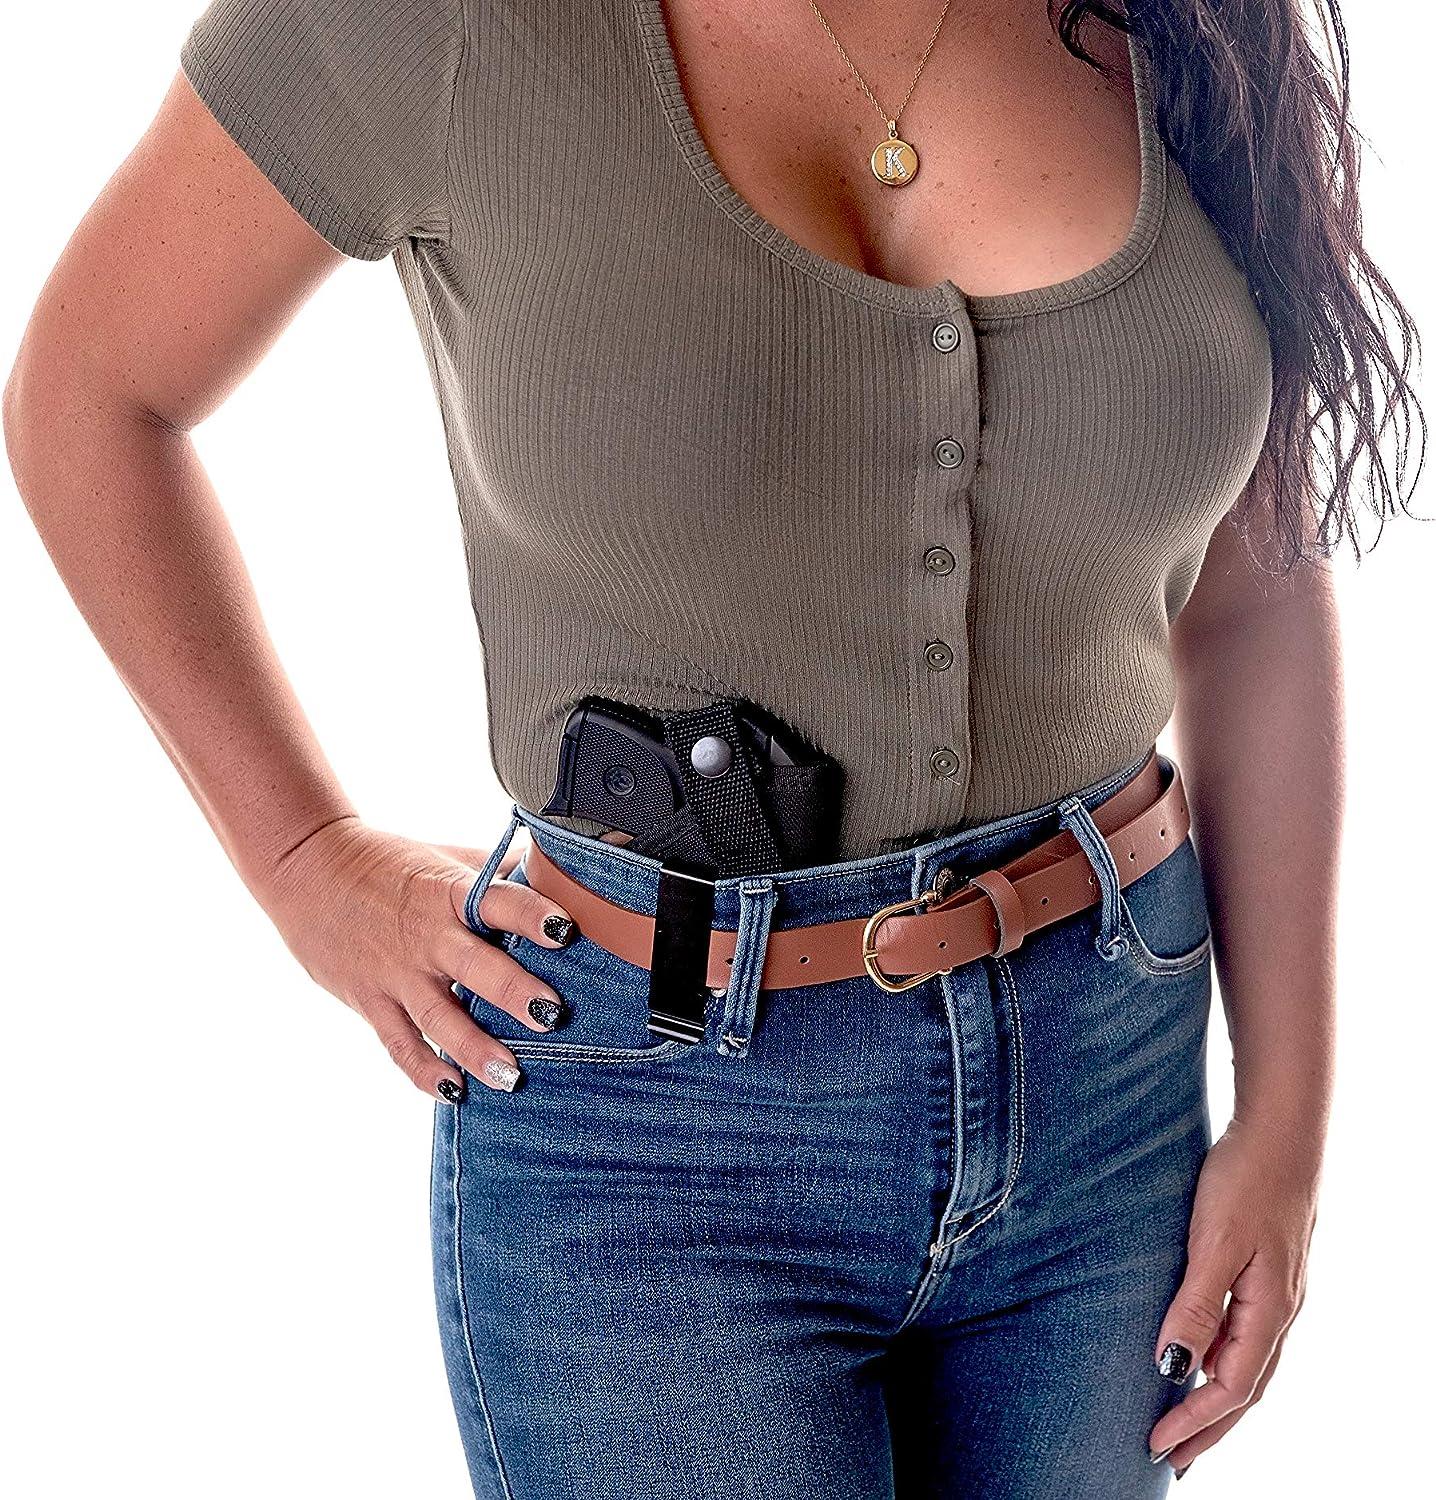 Pistol Shoulder Holster For 9mm Gun Holster For Women Men